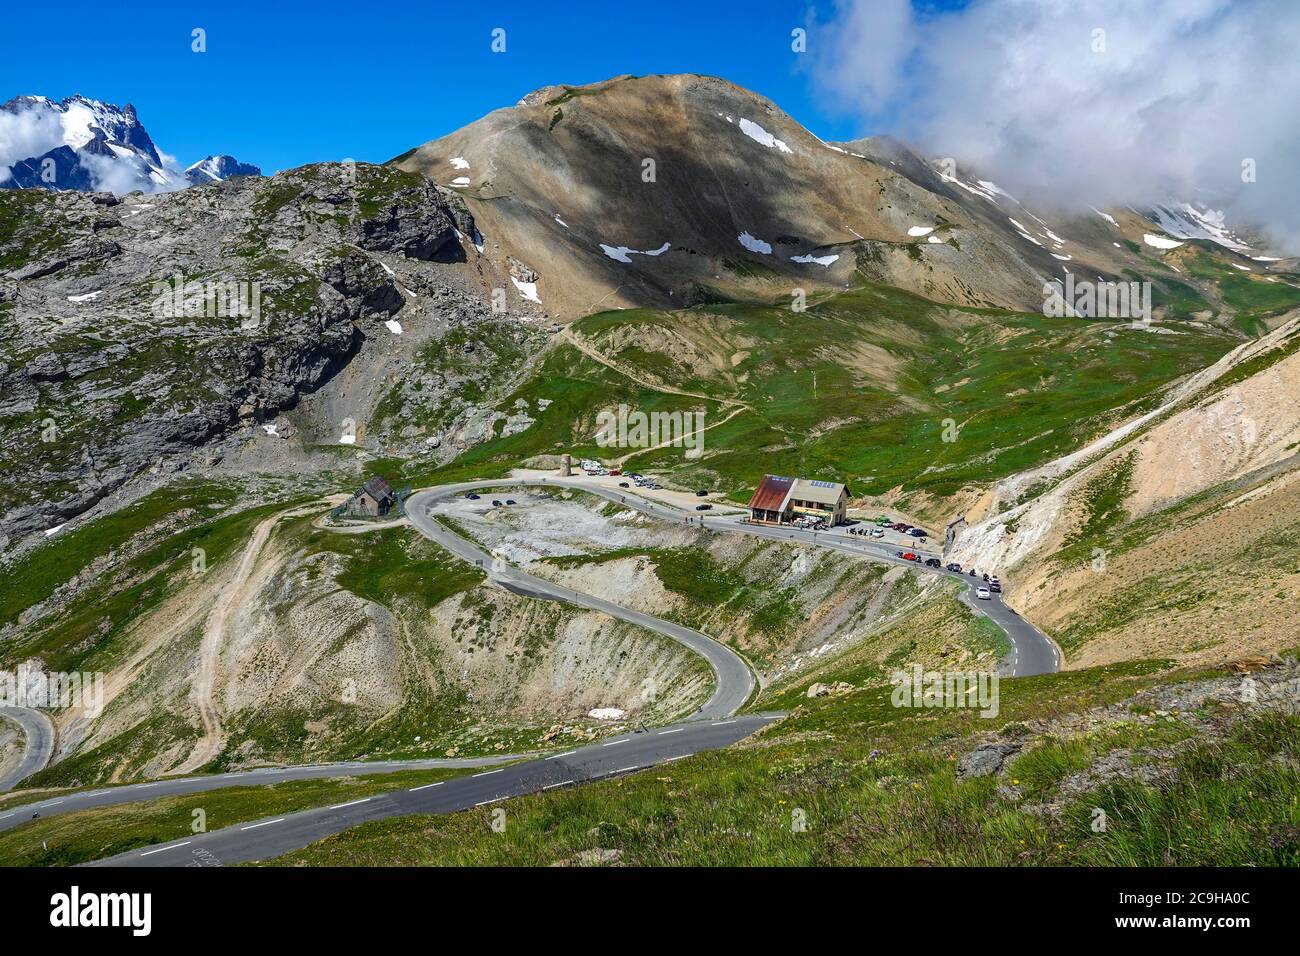 Carretera con montañas y vehículos, paso de Galibier, Alpes franceses, Francia Foto de stock